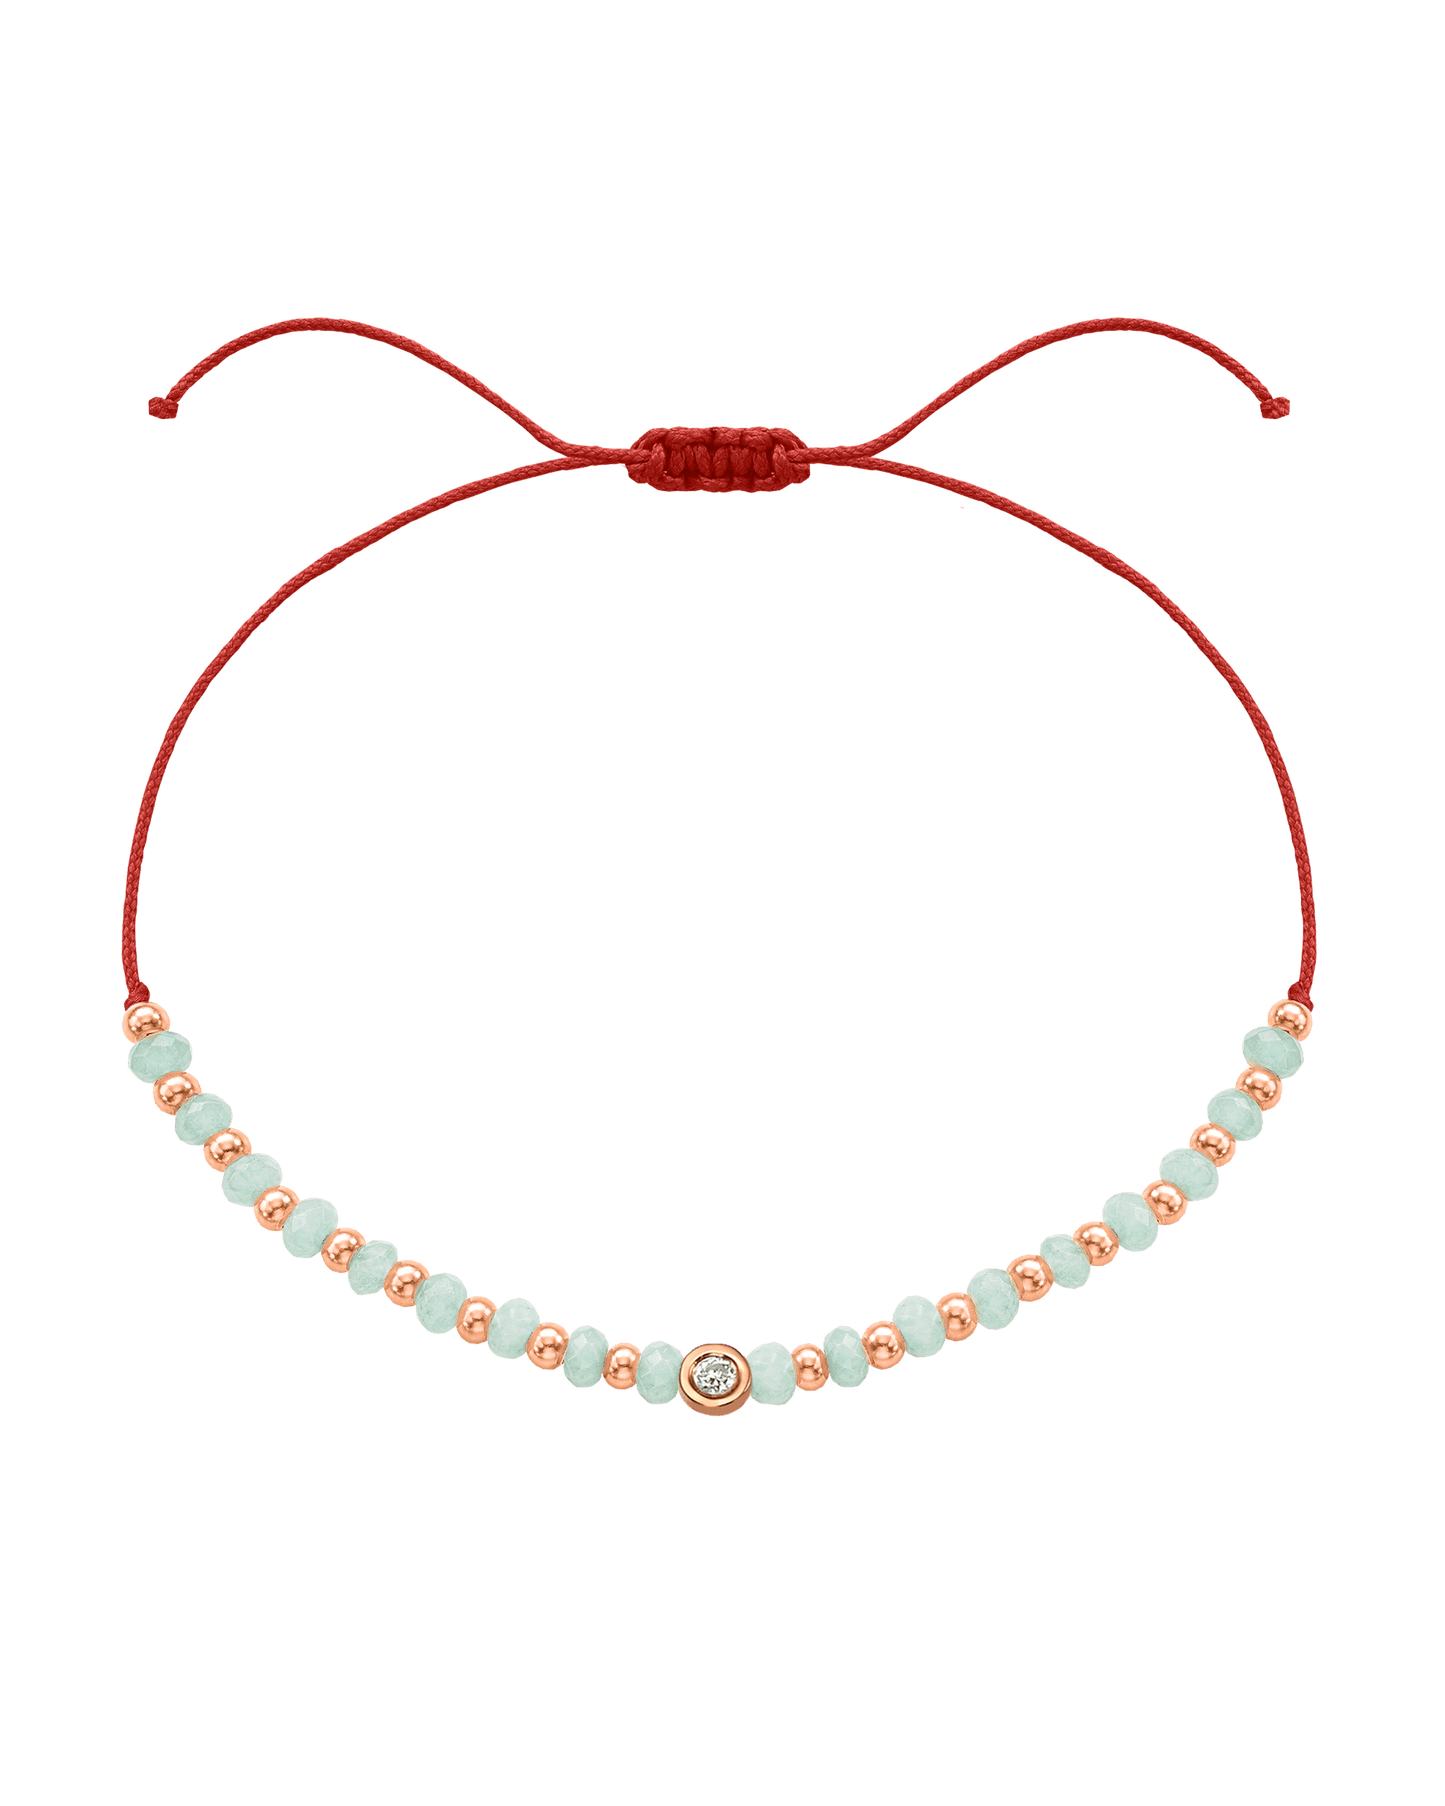 Apatite Gemstone String of Love Bracelet for Inspiration - 14K Rose Gold Bracelets 14K Solid Gold Red Small: 0.03ct 